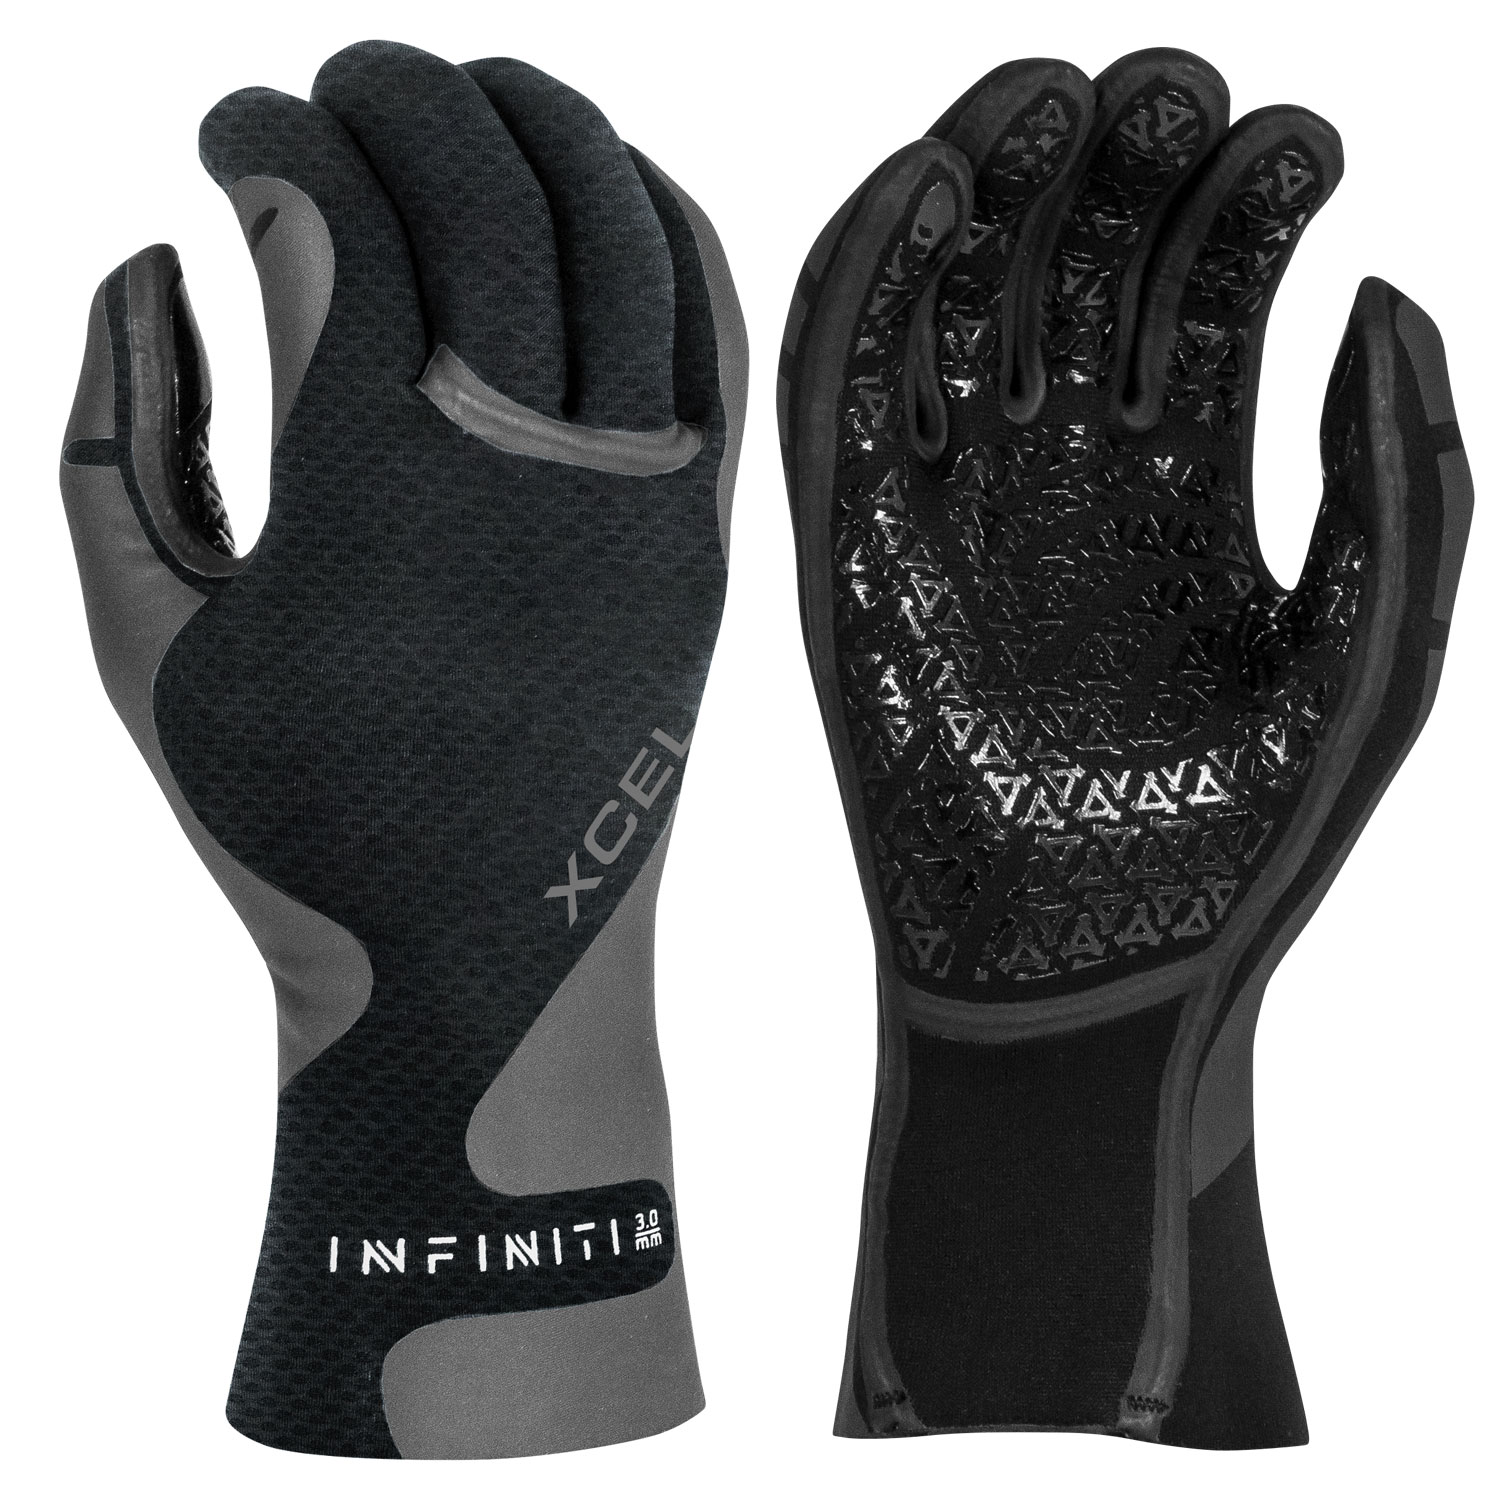 Infiniti-5-Finger-Wetsuit-Gloves